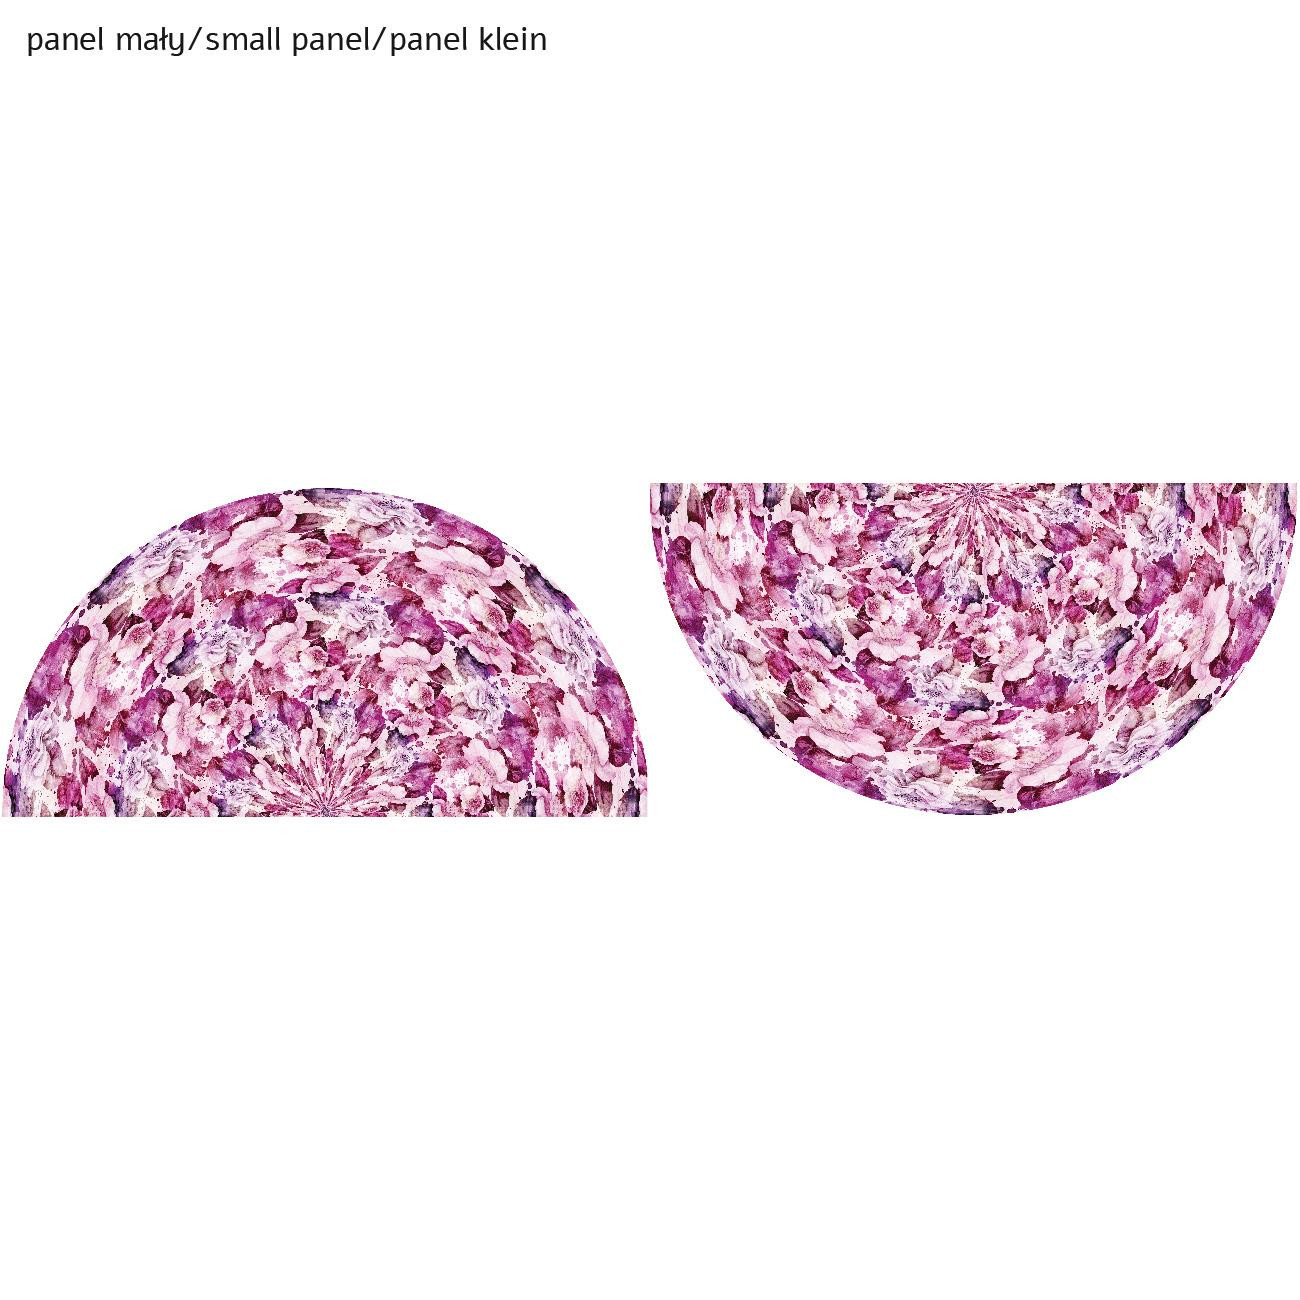 PINK PARADISE pat. 2 - circle skirt panel 